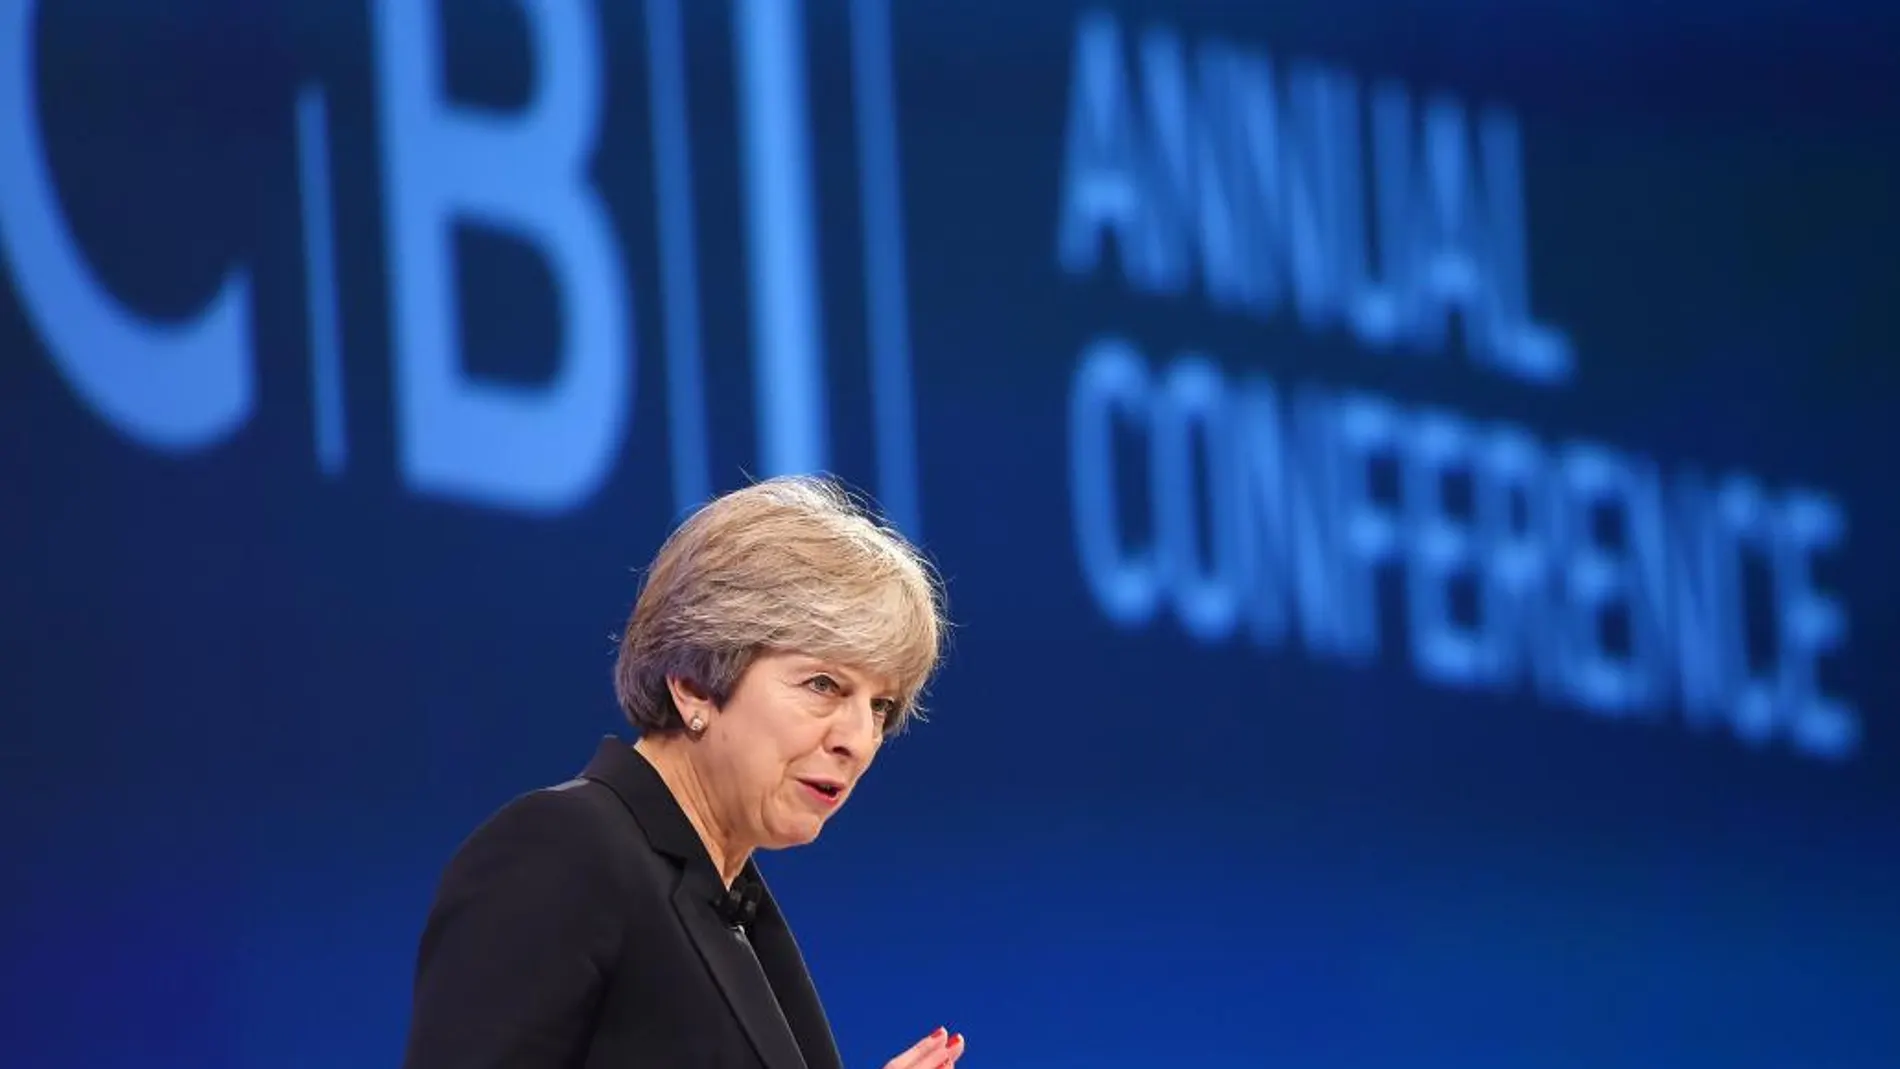 La primera ministra británica, Theresa May, pronuncia un discurso durante el congreso anual de la Confederación de la Industria Británica (CBI) en Londres (Reino Unido), hoy